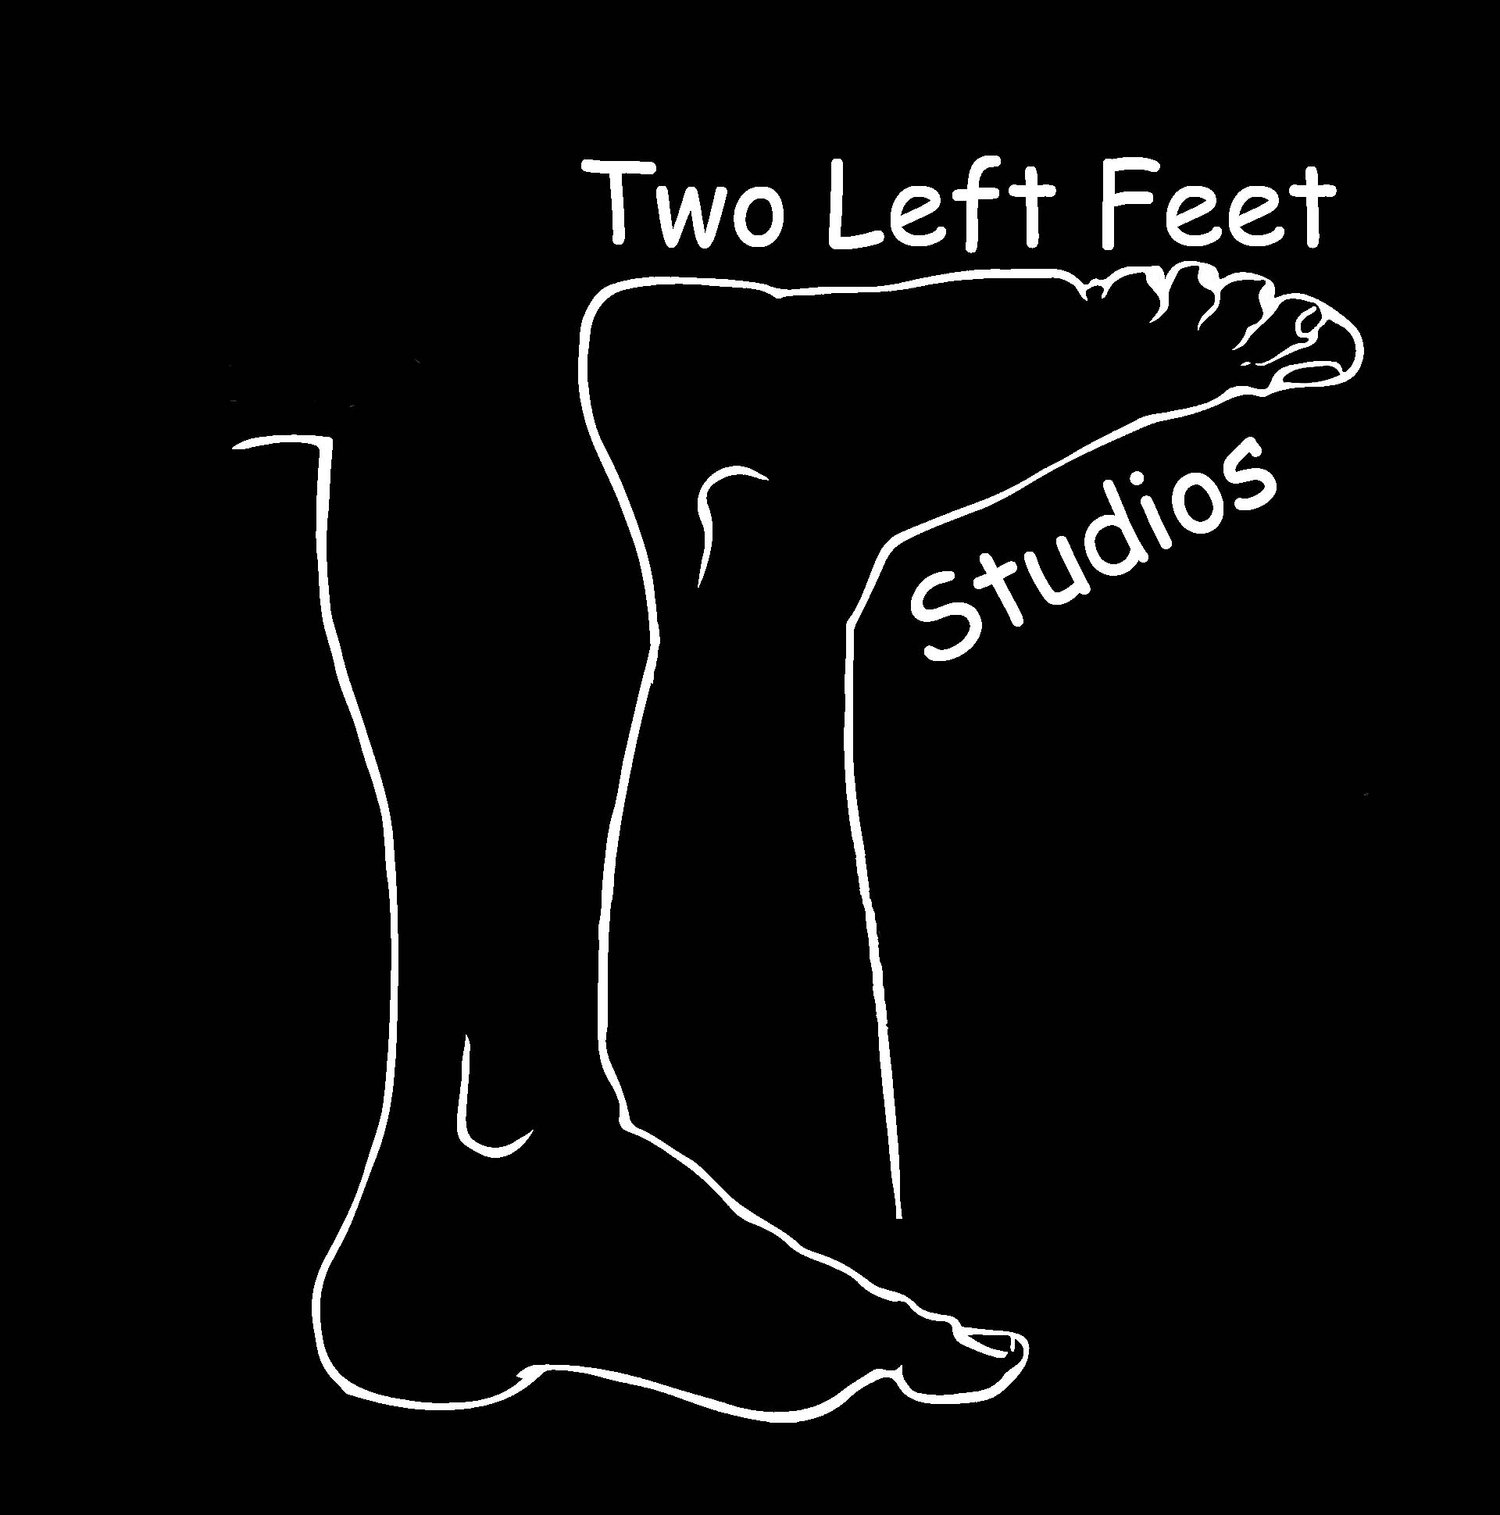 Two Left Feet Studios